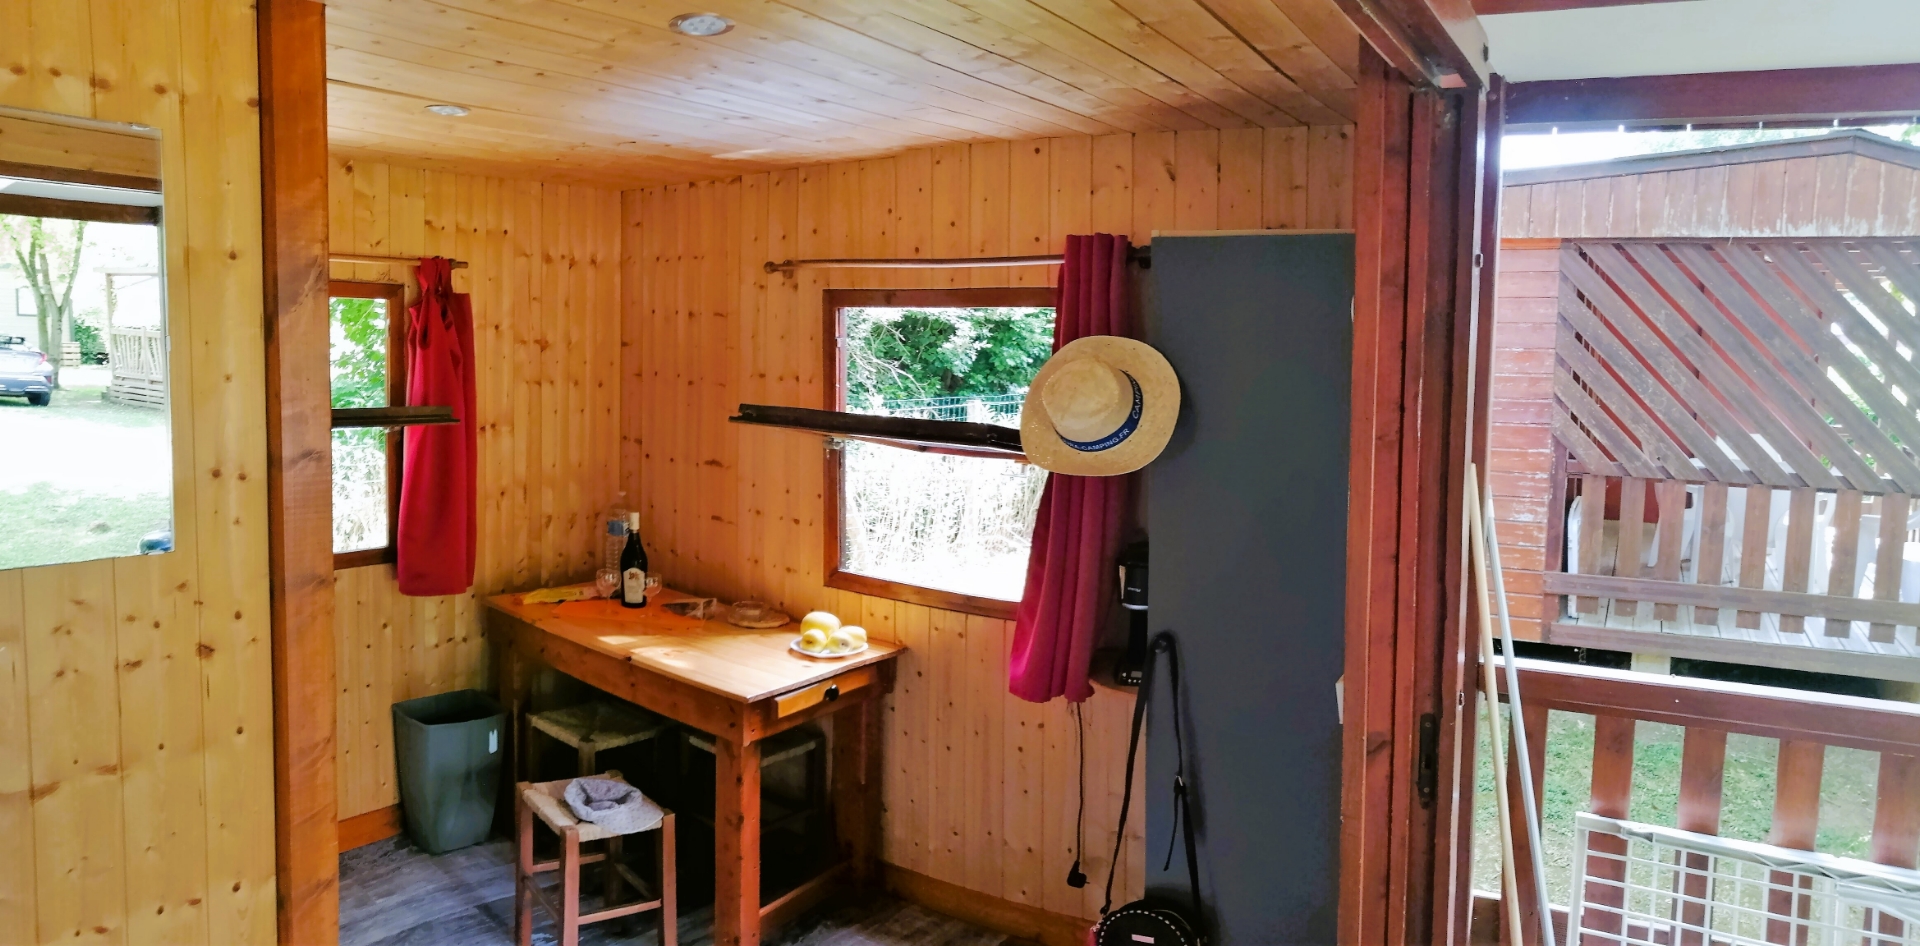 L’Espace cuisine - salle à manger du Petit Chalet, en location au camping les Bords de Loue en région Bourgogne-Franche-Comté